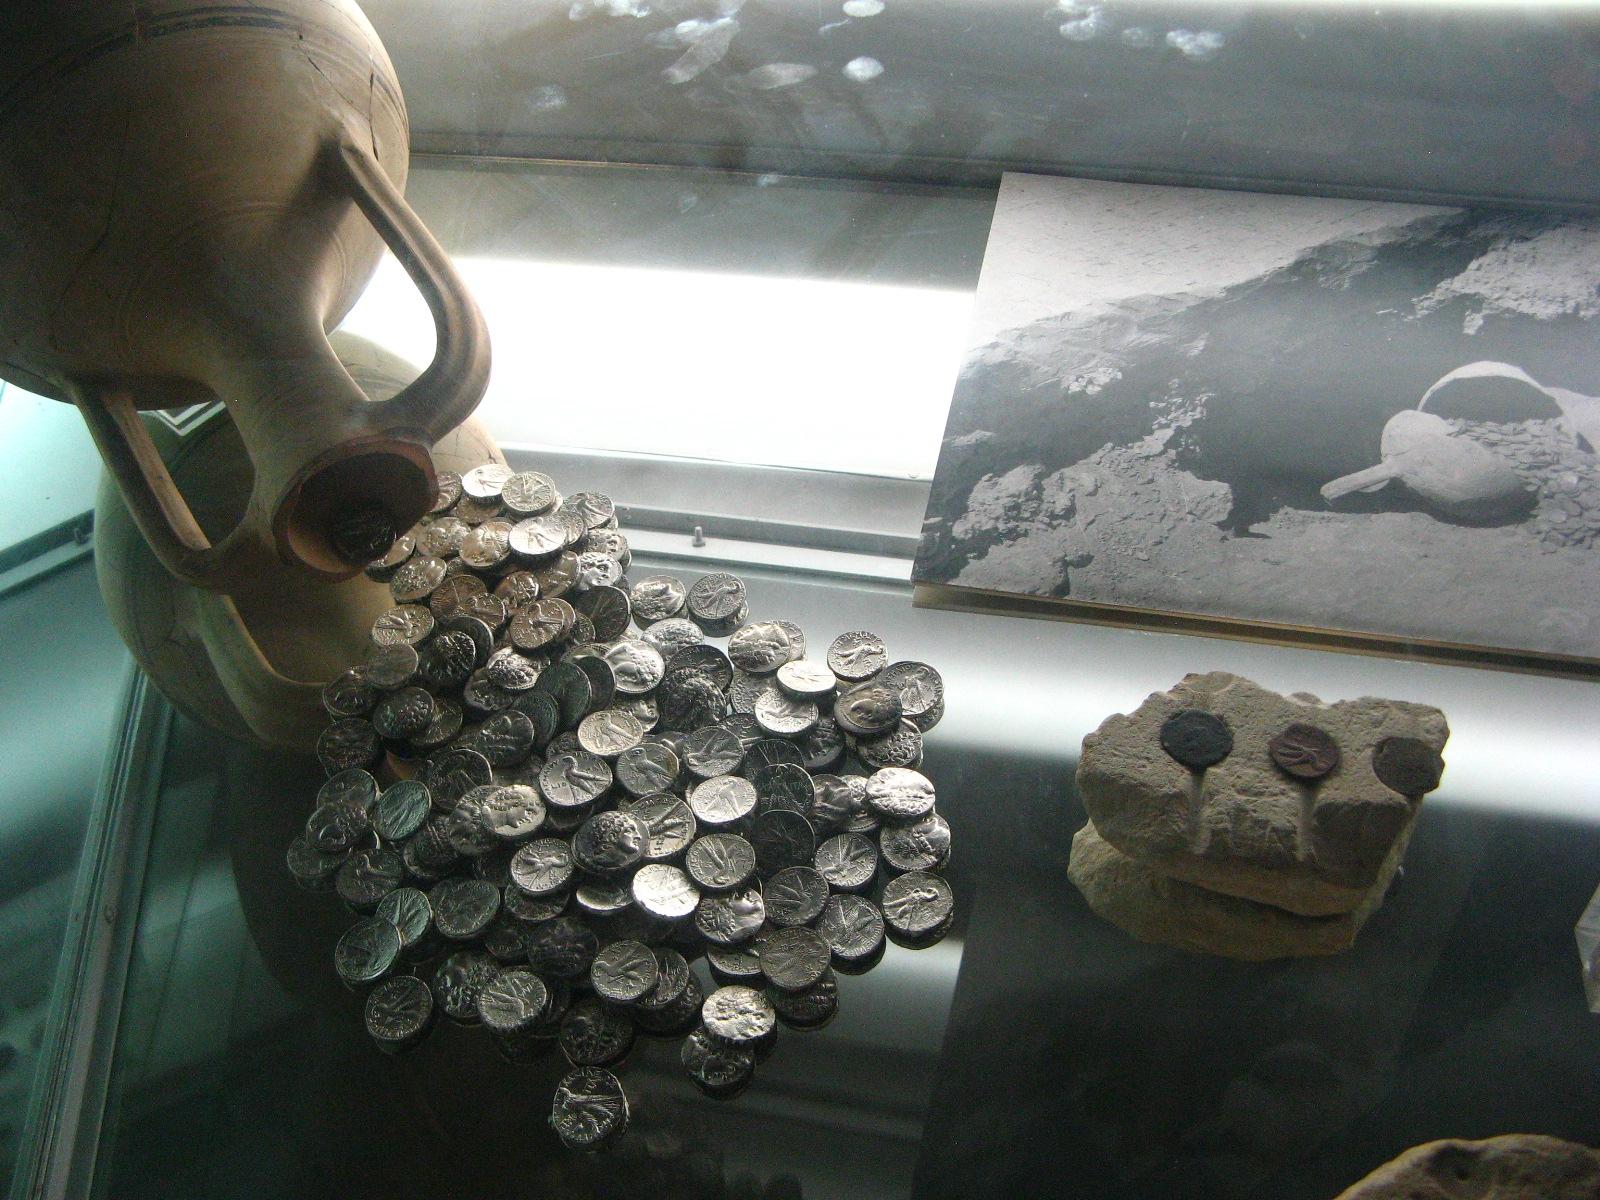 Кипрский археологический музей